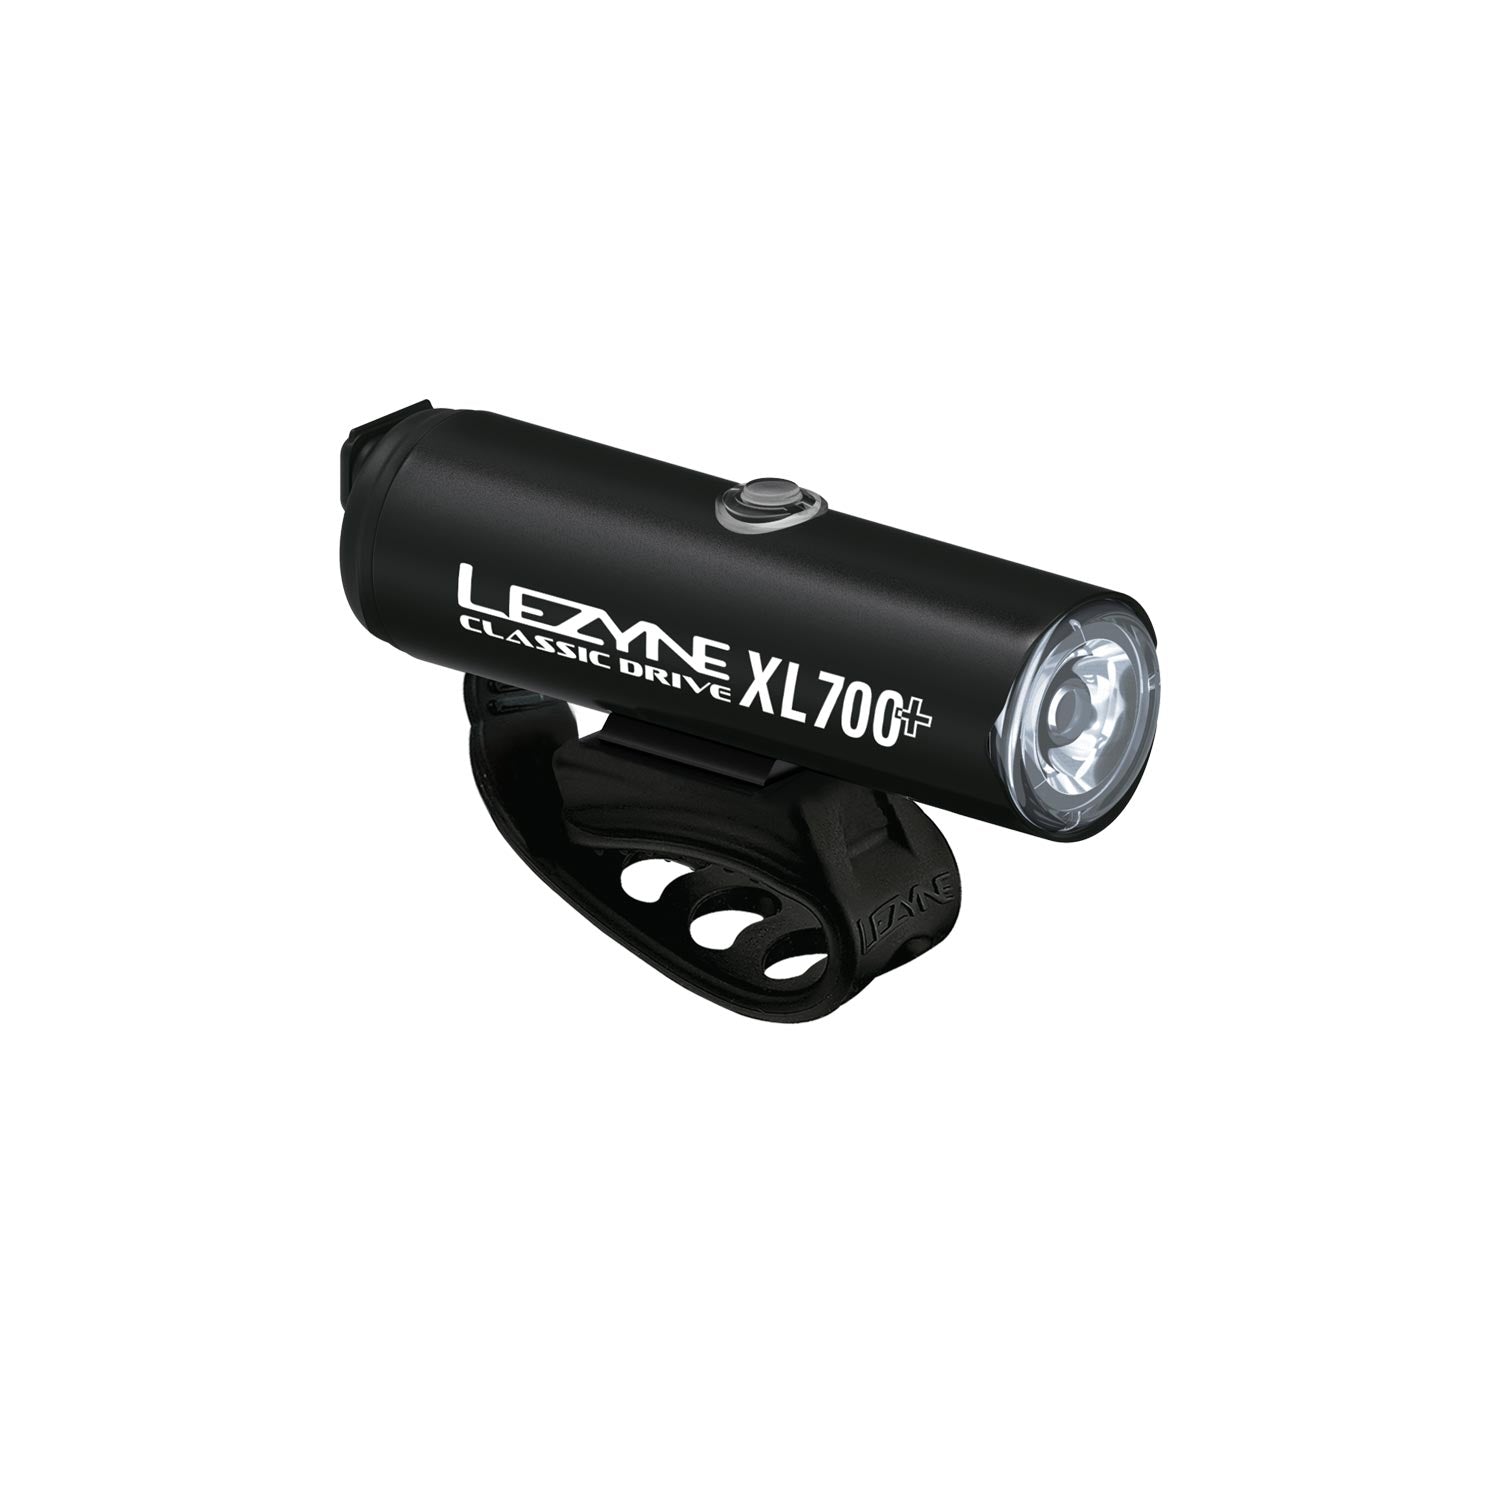 CLASSIC DRIVE XL 700+ | LED BIKE LIGHT